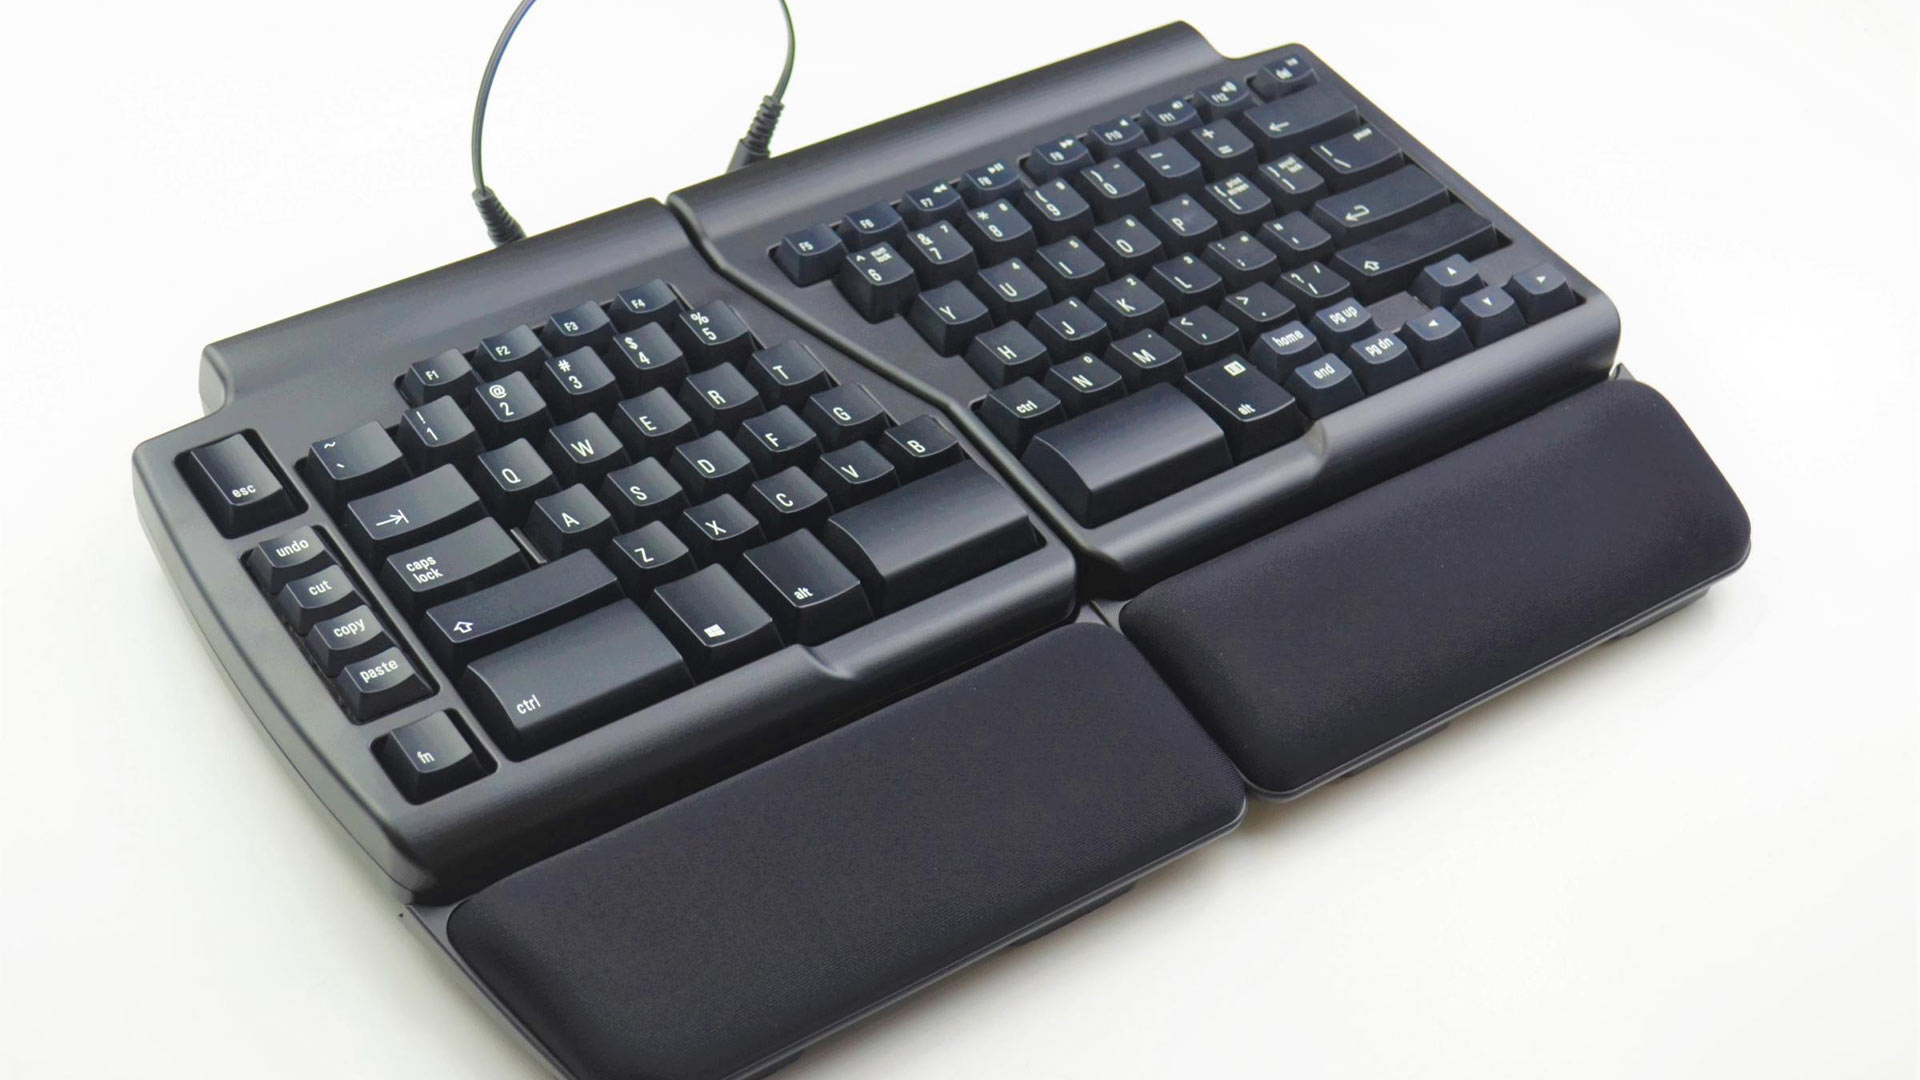 Matias Ergonomic Keyboard for PC